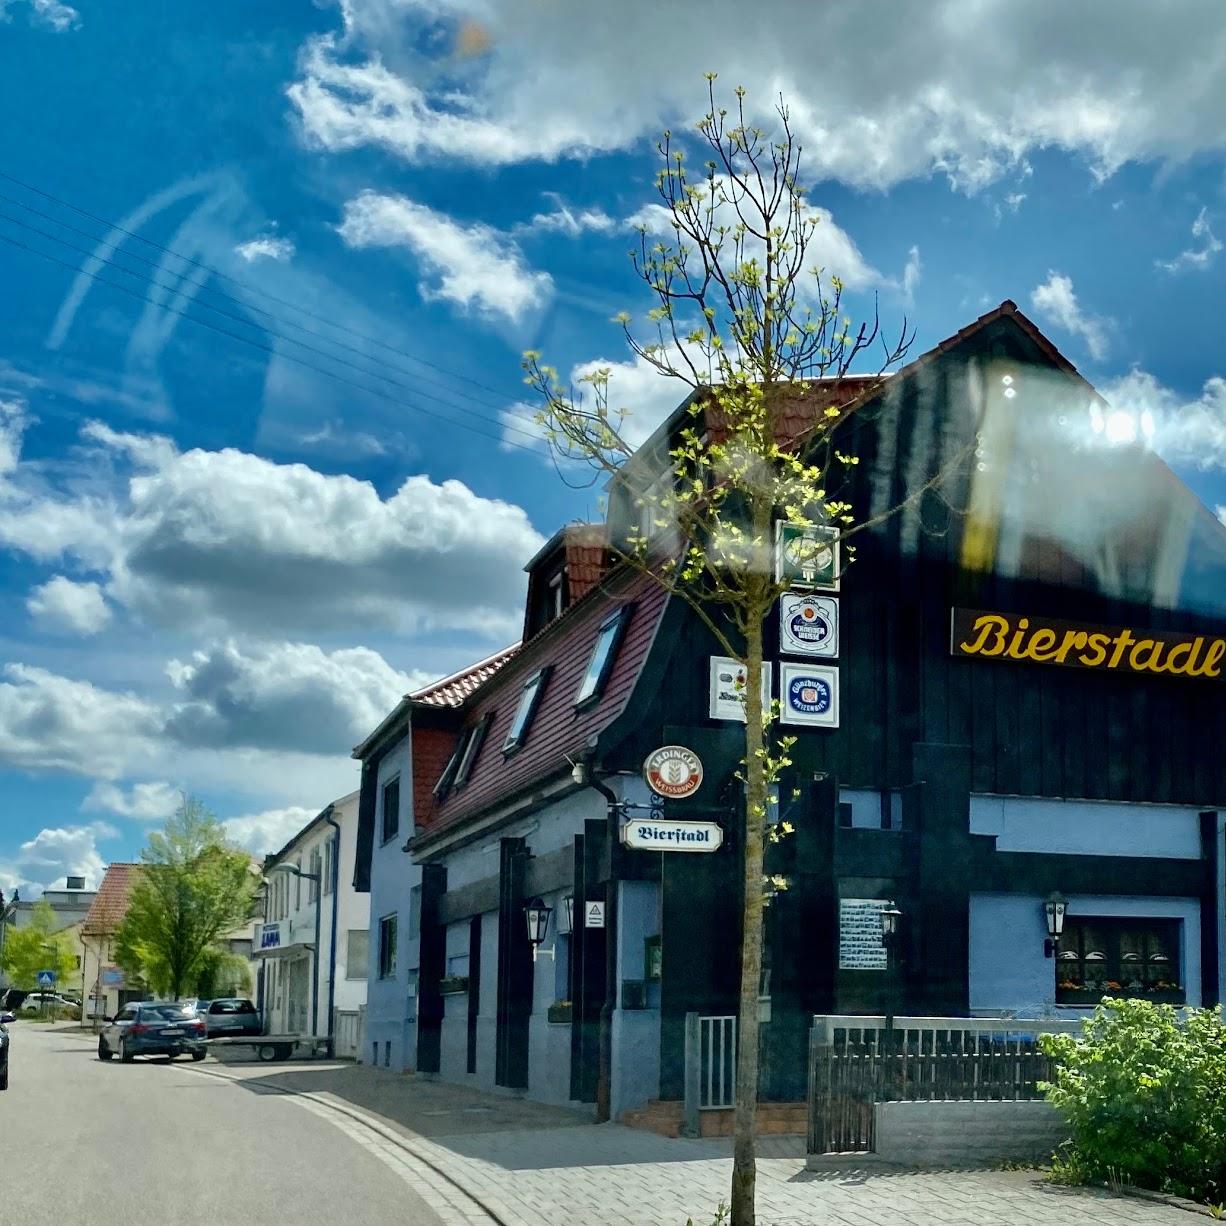 Restaurant "Bierstadl" in Herbrechtingen